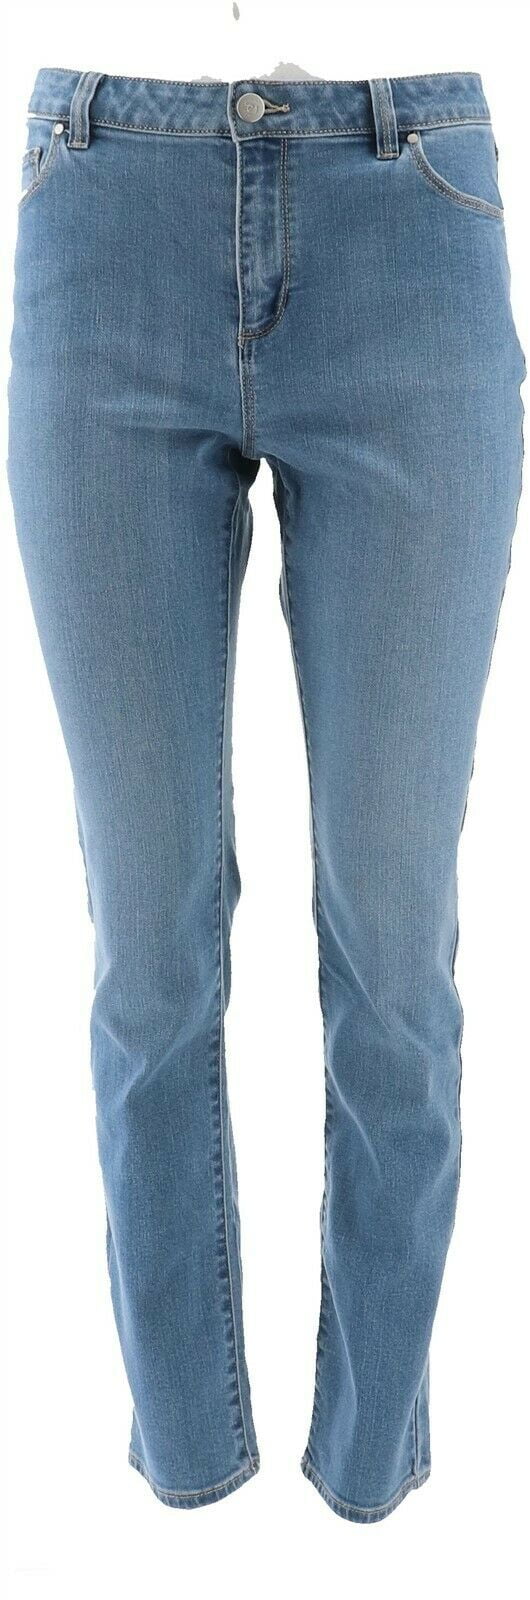 susan graver stretch jeans